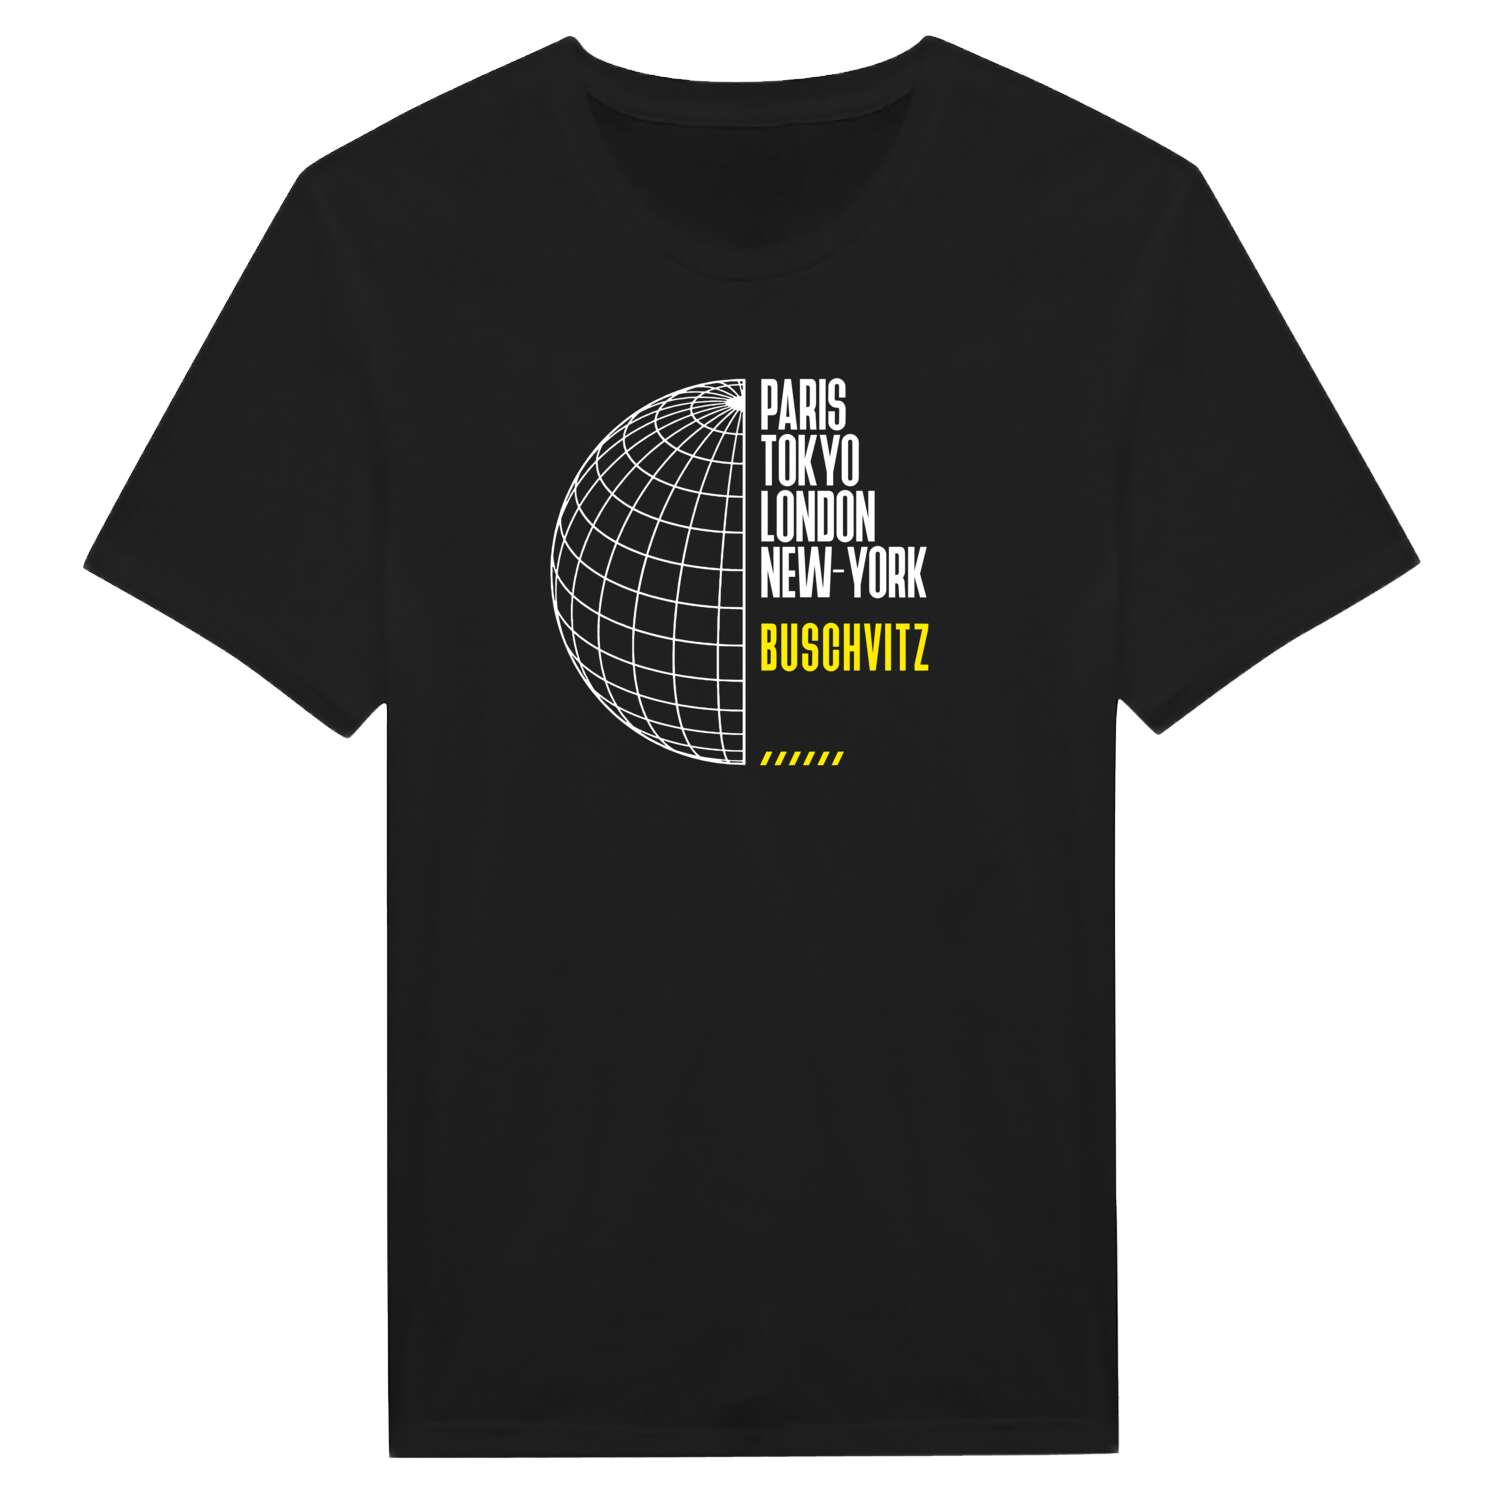 Buschvitz T-Shirt »Paris Tokyo London«